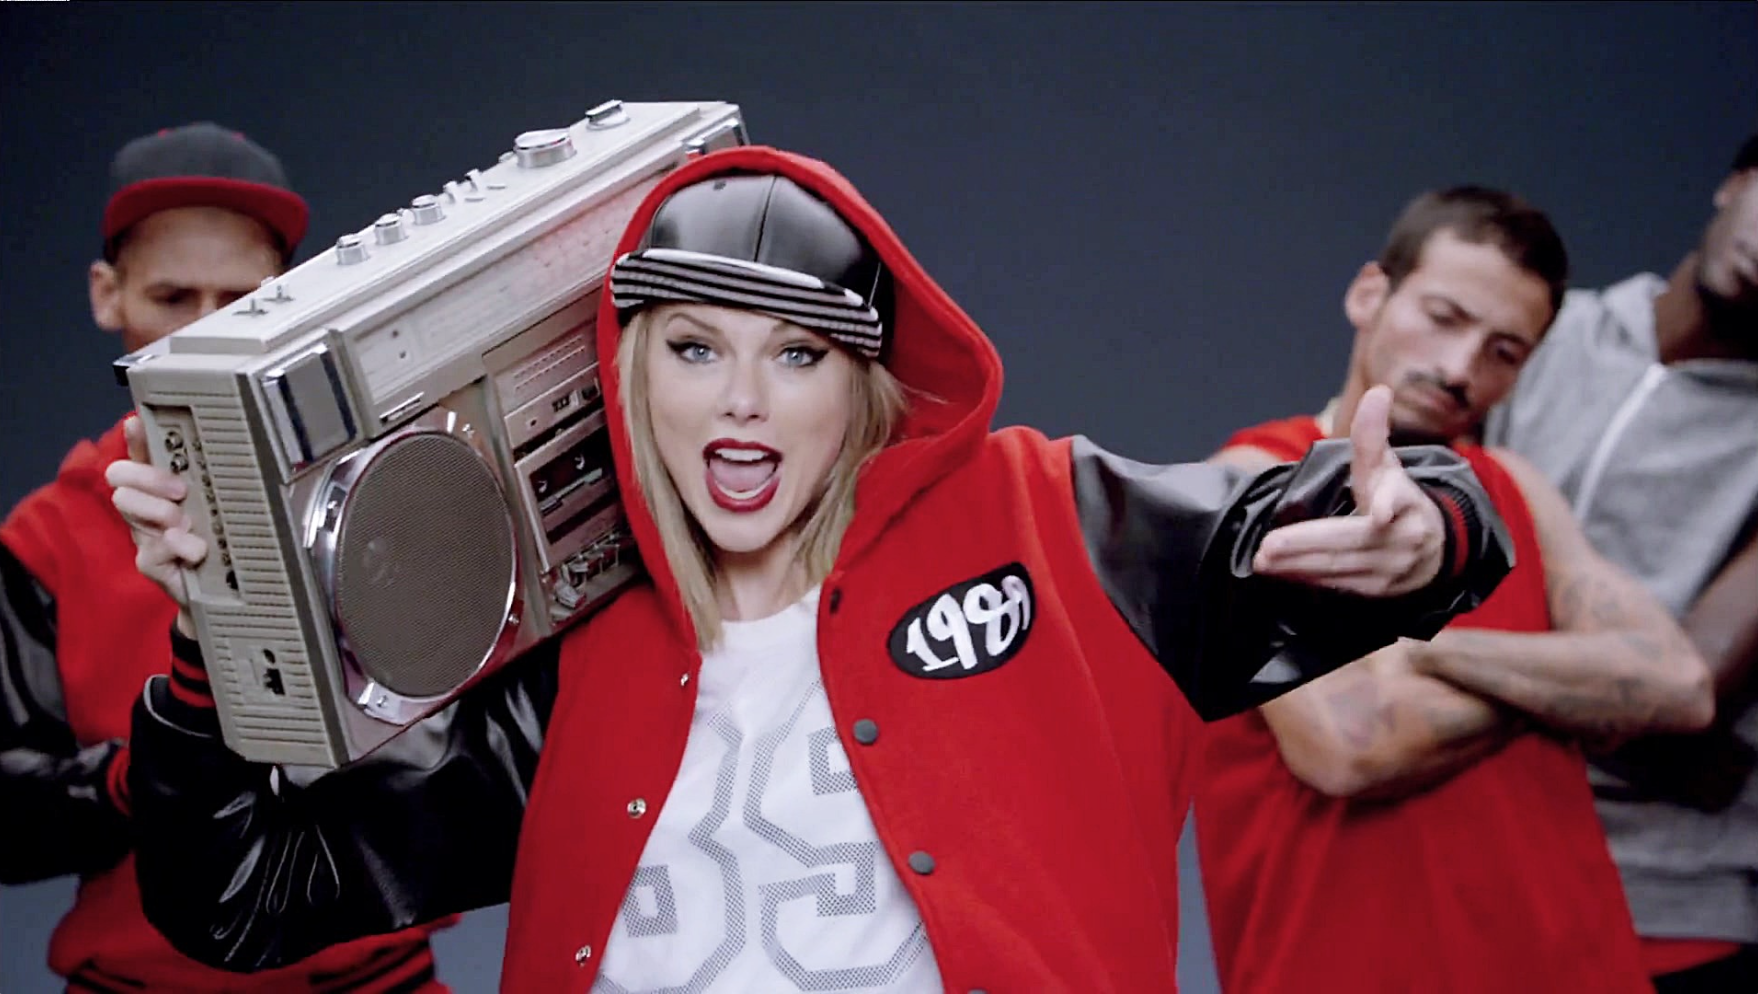 Рингтон зарубежные популярные новинки. Taylor Swift Shake it off. Музыкальные видеоклипы. Музыкальная фотосессия. Клипы фото.